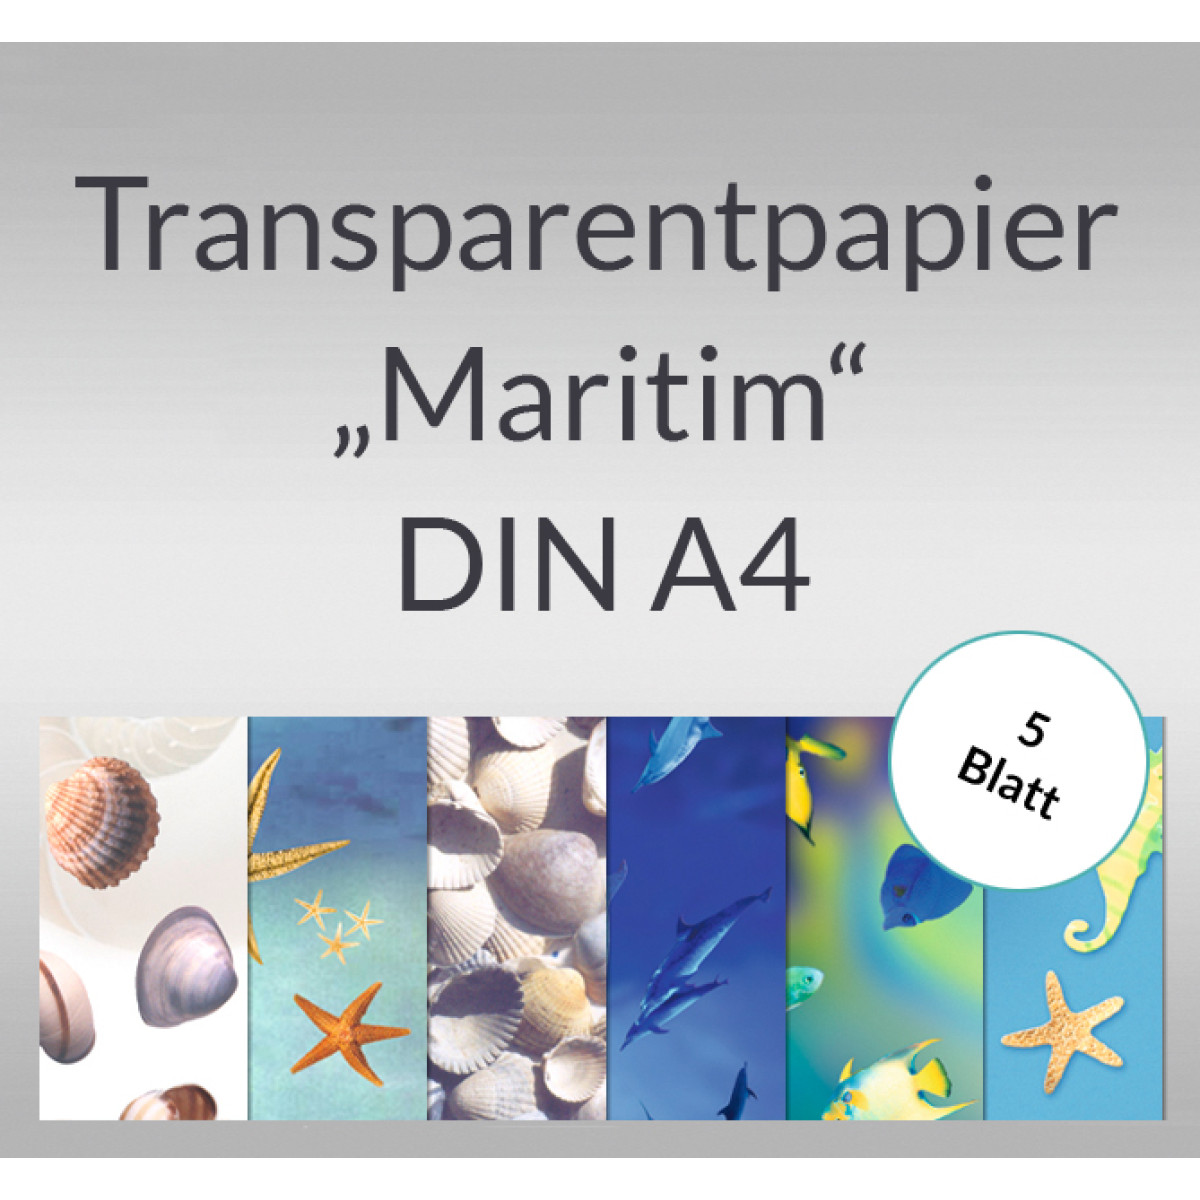 Transparentpapier "Maritim" DIN A4 - 5 Blatt